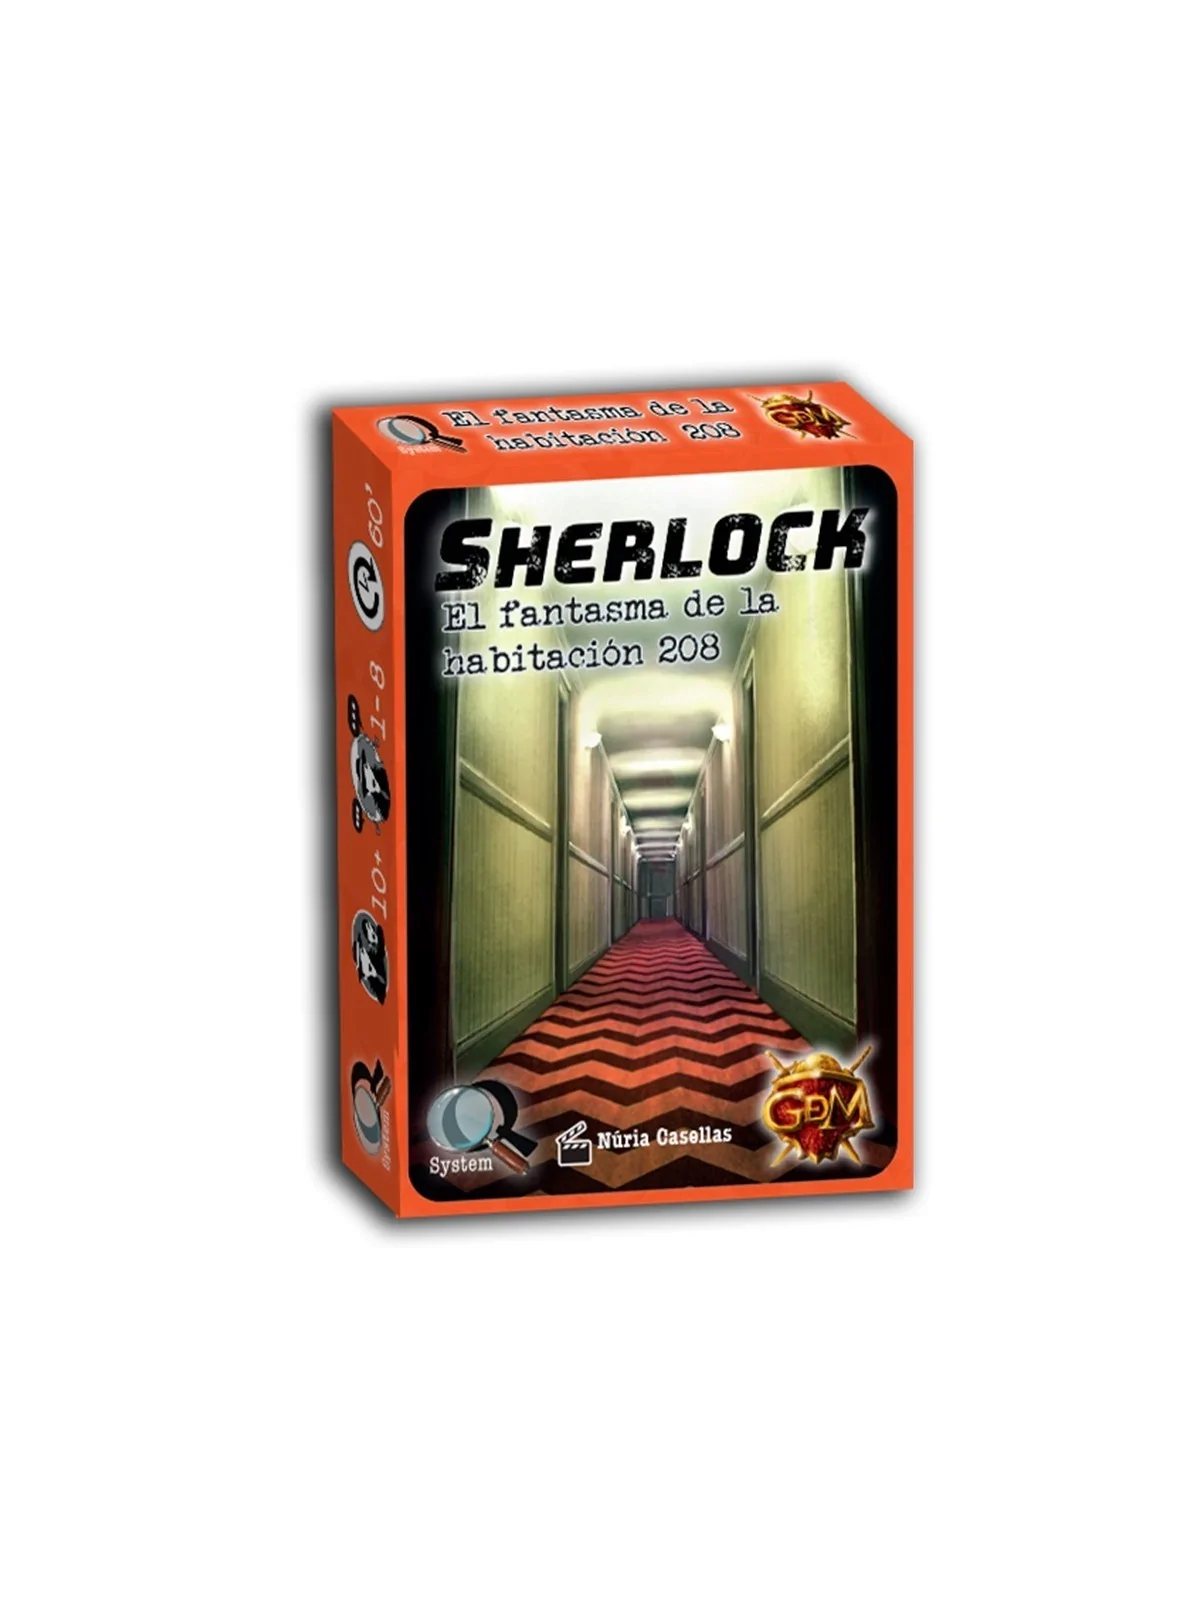 Comprar Serie Q Sherlock: la Habitacion 208 barato al mejor precio 6,7